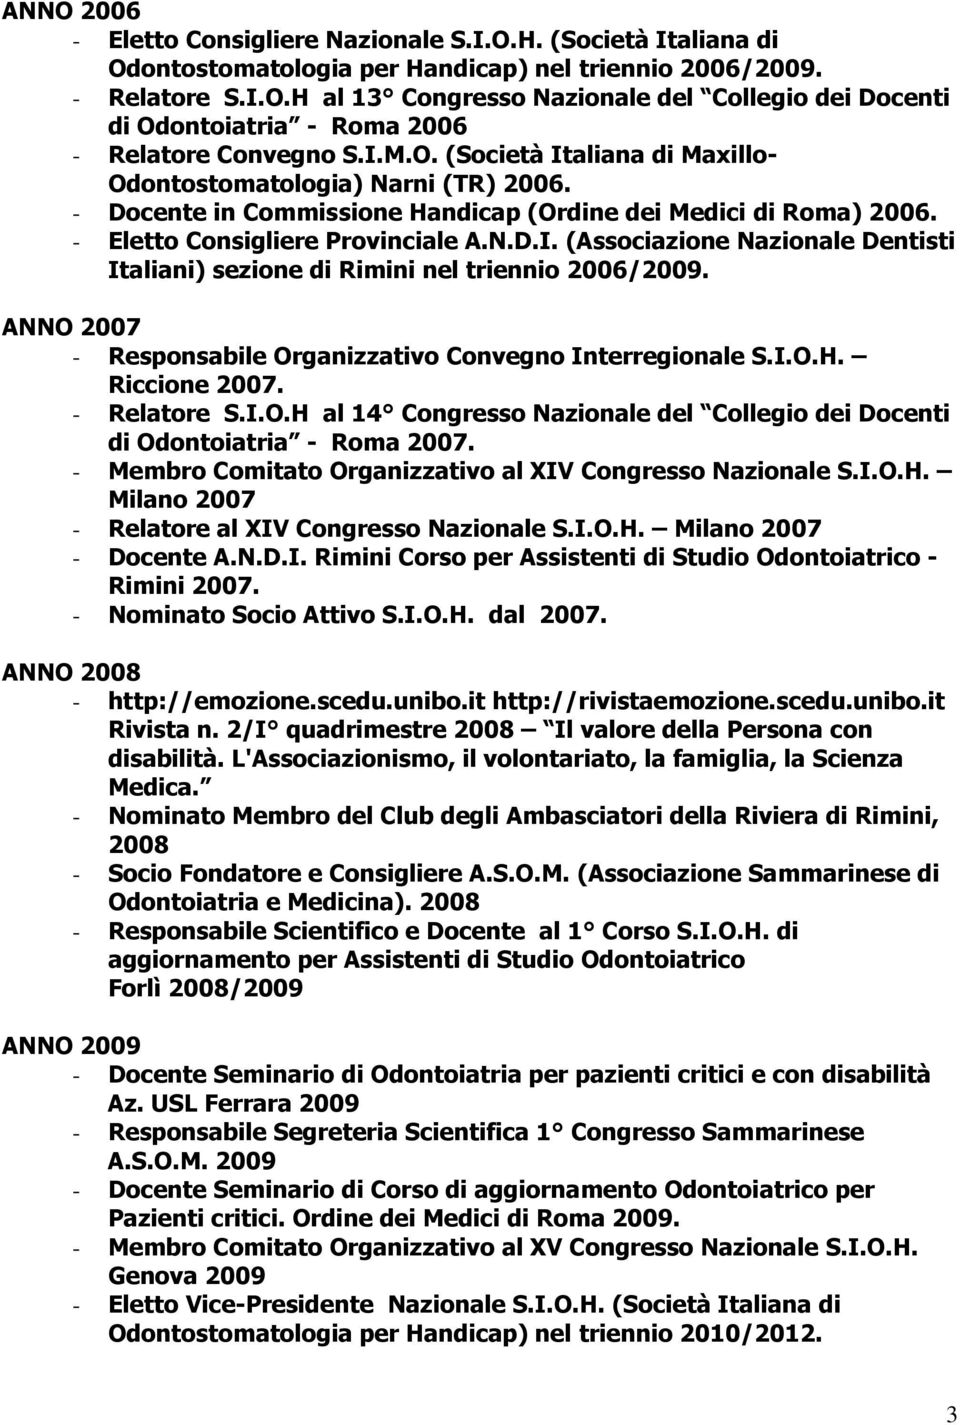 ANNO 2007 - Responsabile Organizzativo Convegno Interregionale S.I.O.H. Riccione 2007. - Relatore S.I.O.H al 14 Congresso Nazionale del Collegio dei Docenti di Odontoiatria - Roma 2007.